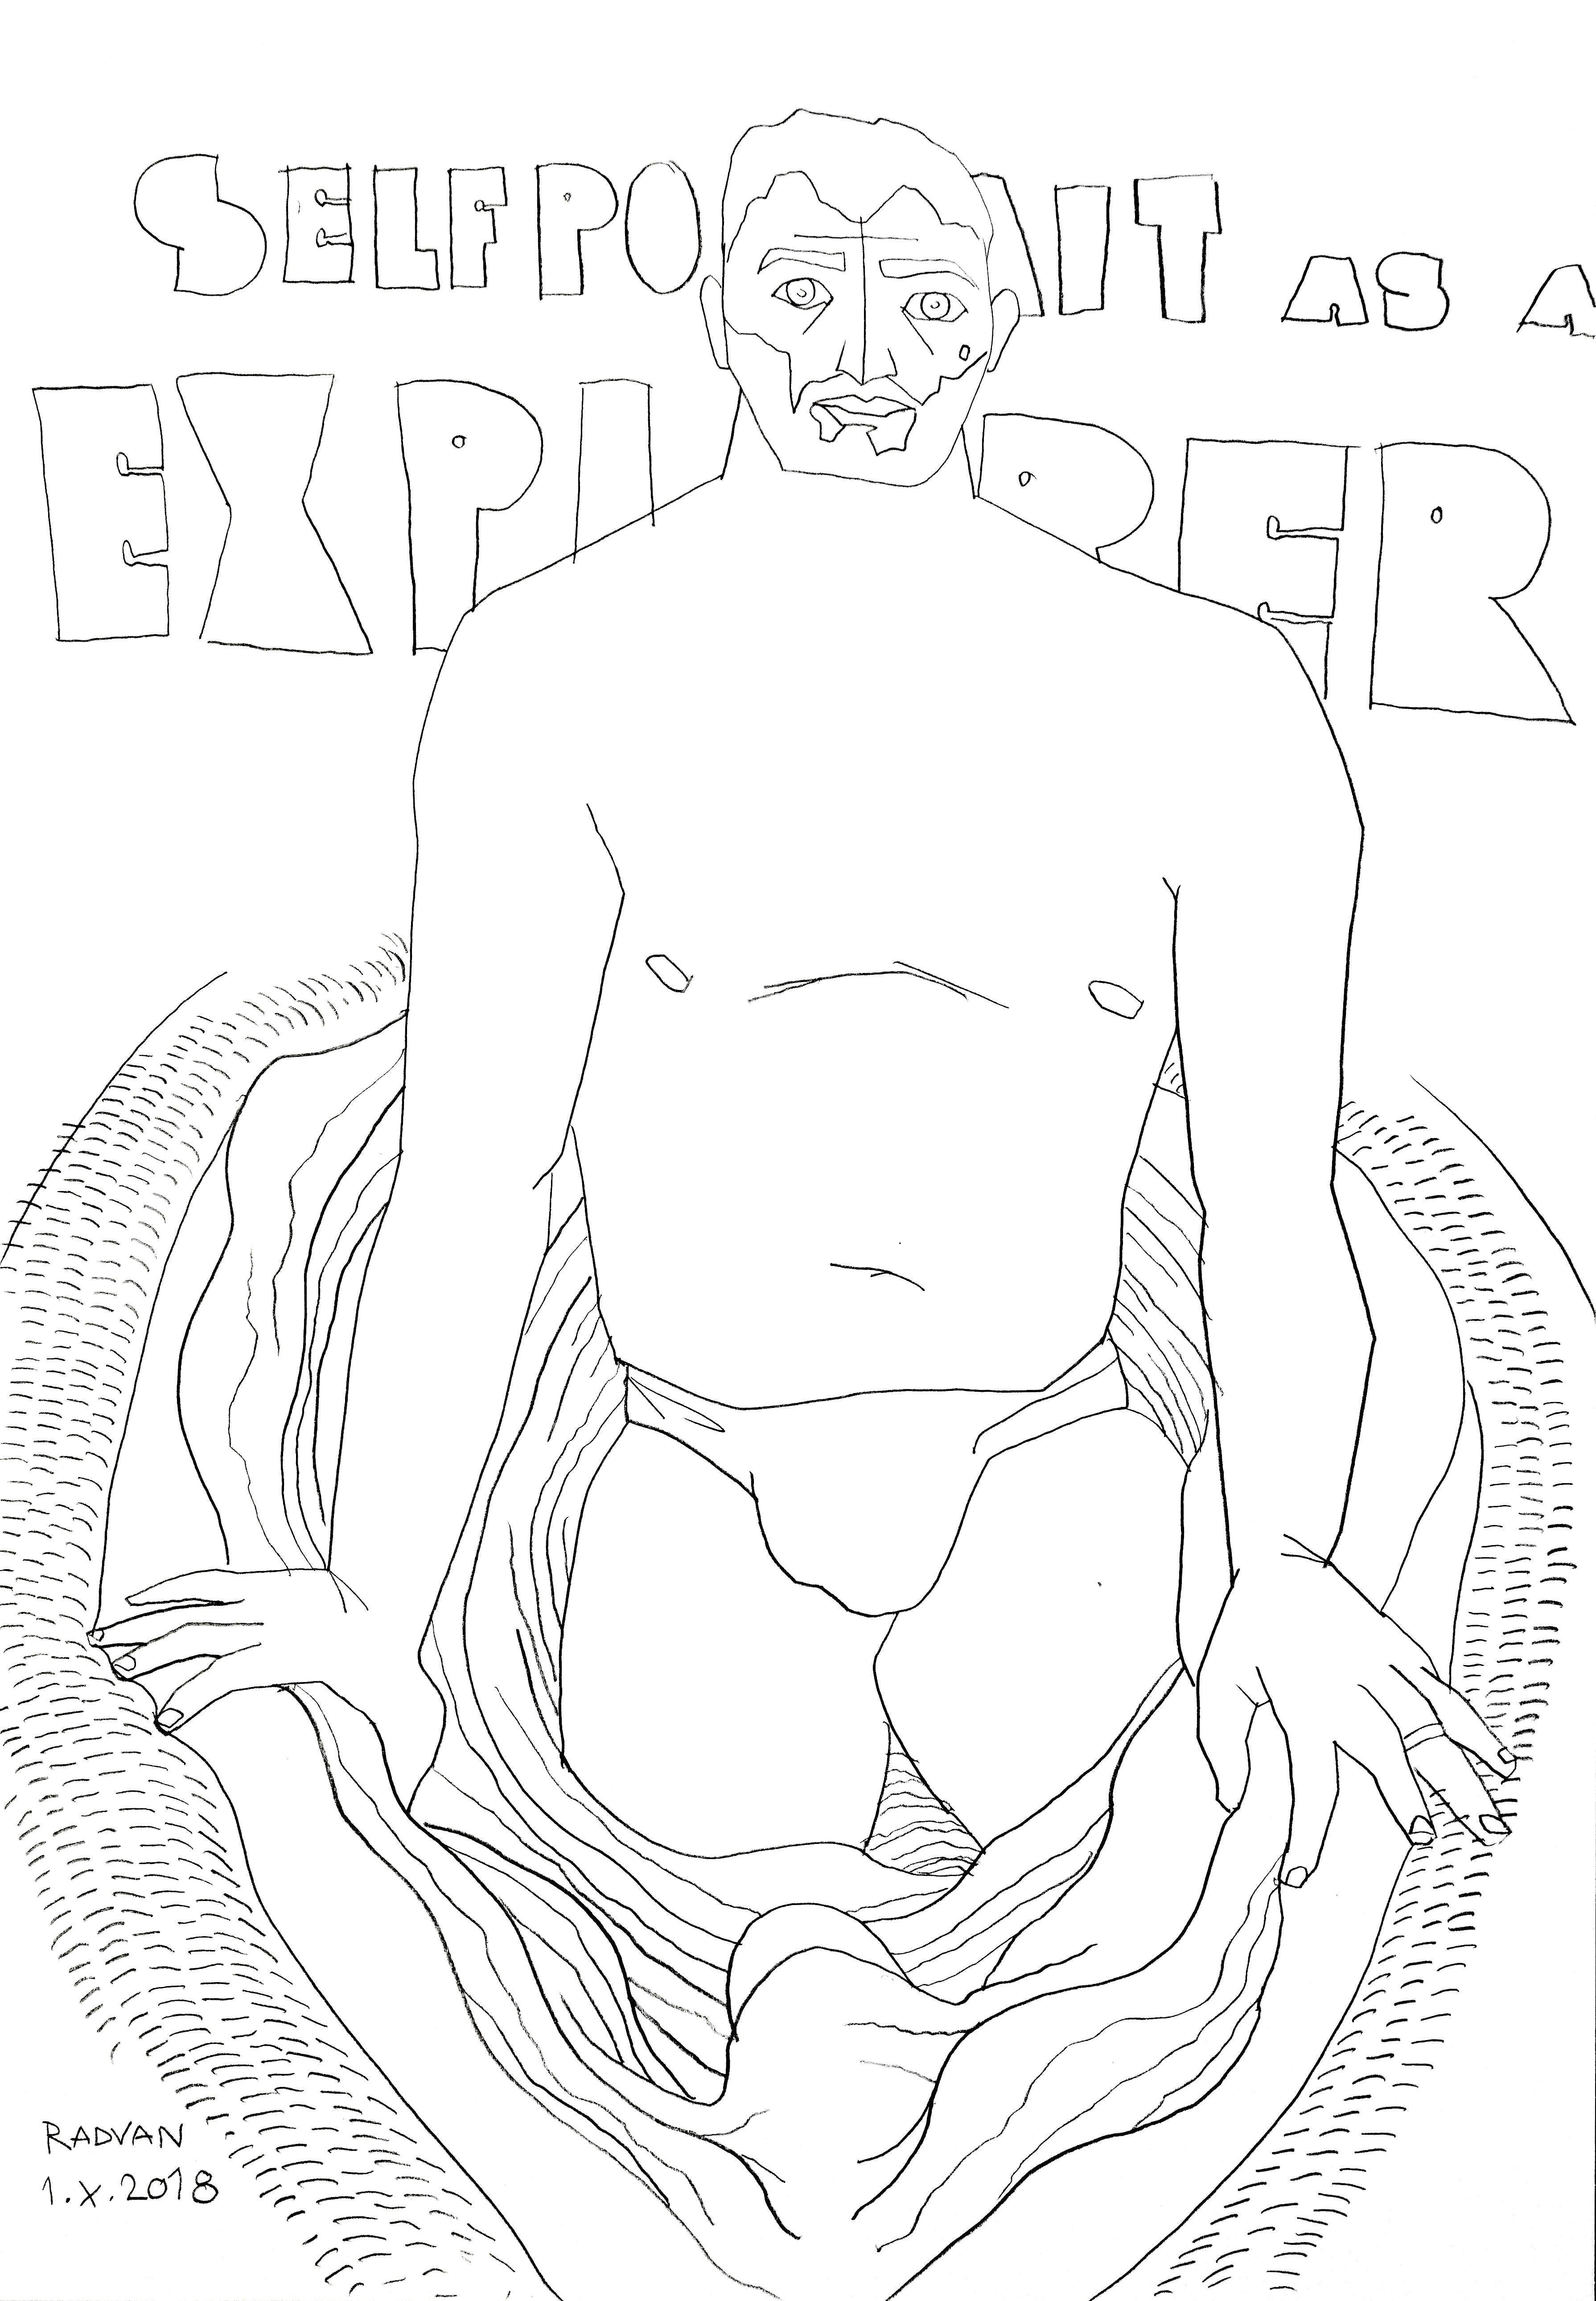 Alexandru Rădvan Nude – Selbstporträt als Explorer - 21. Jahrhundert, Akt, Zeichnung, männlich, figurative Kunst